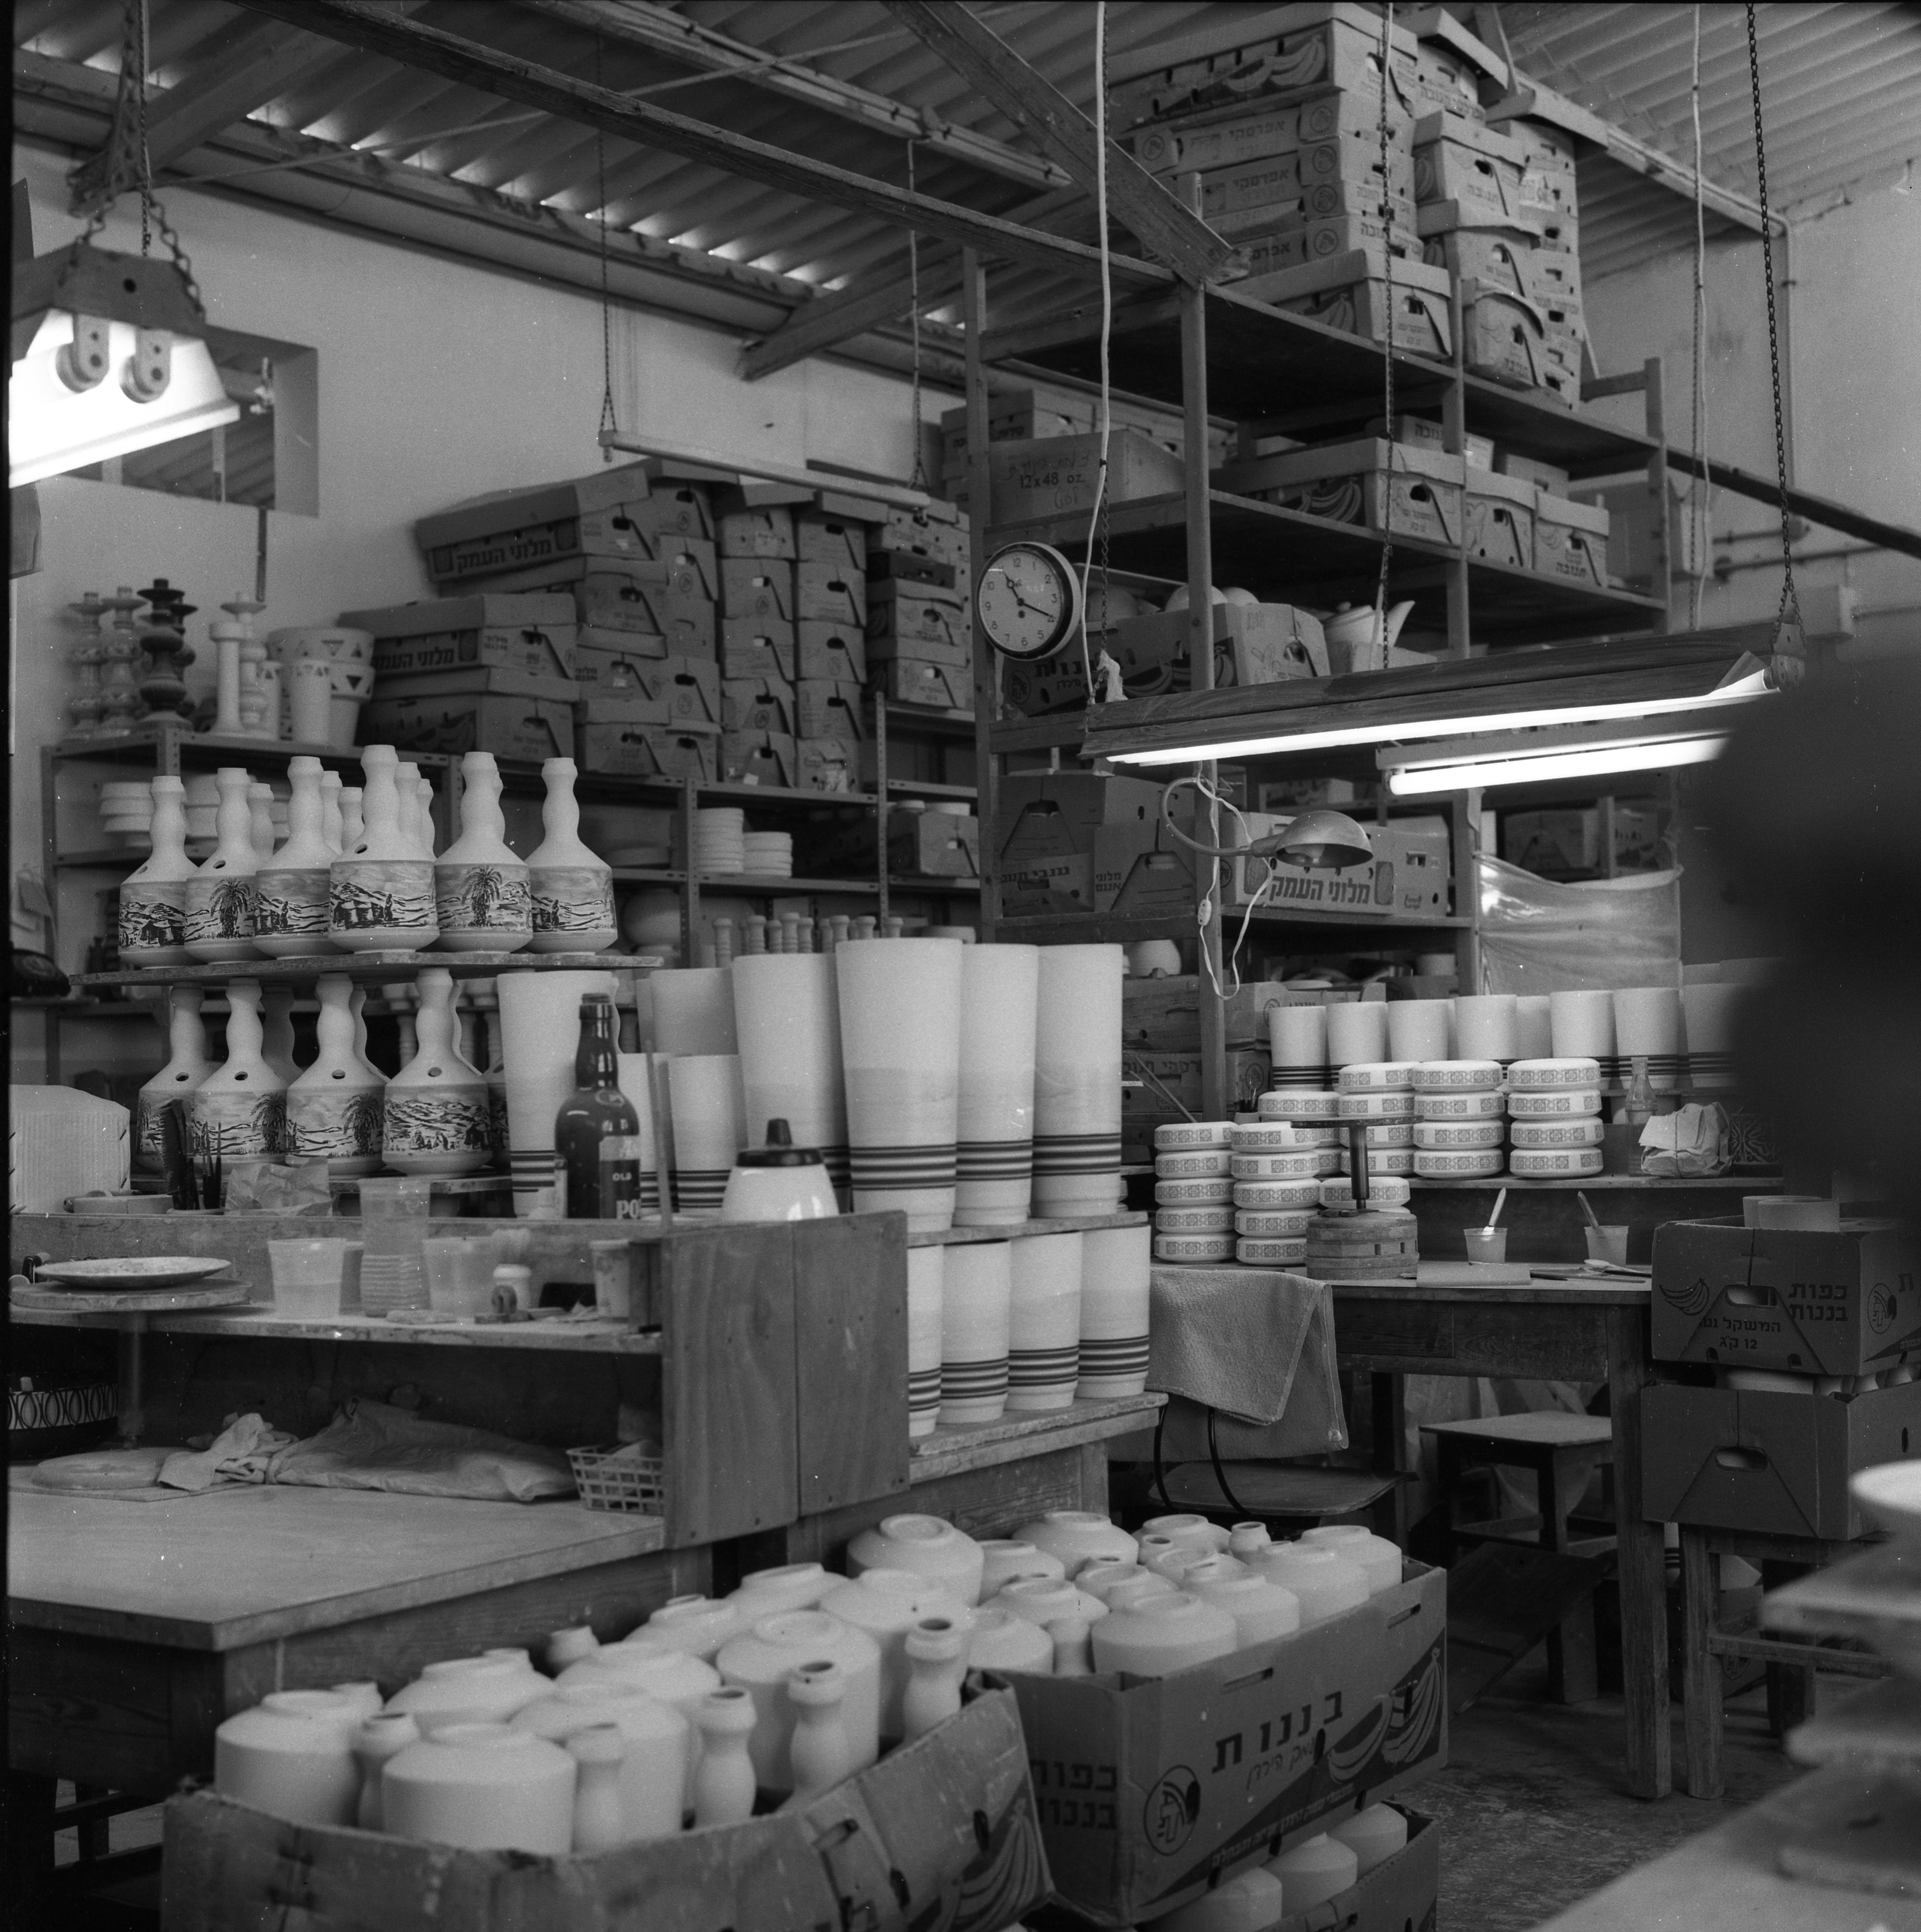  במפעל הקרמיקה; 1972